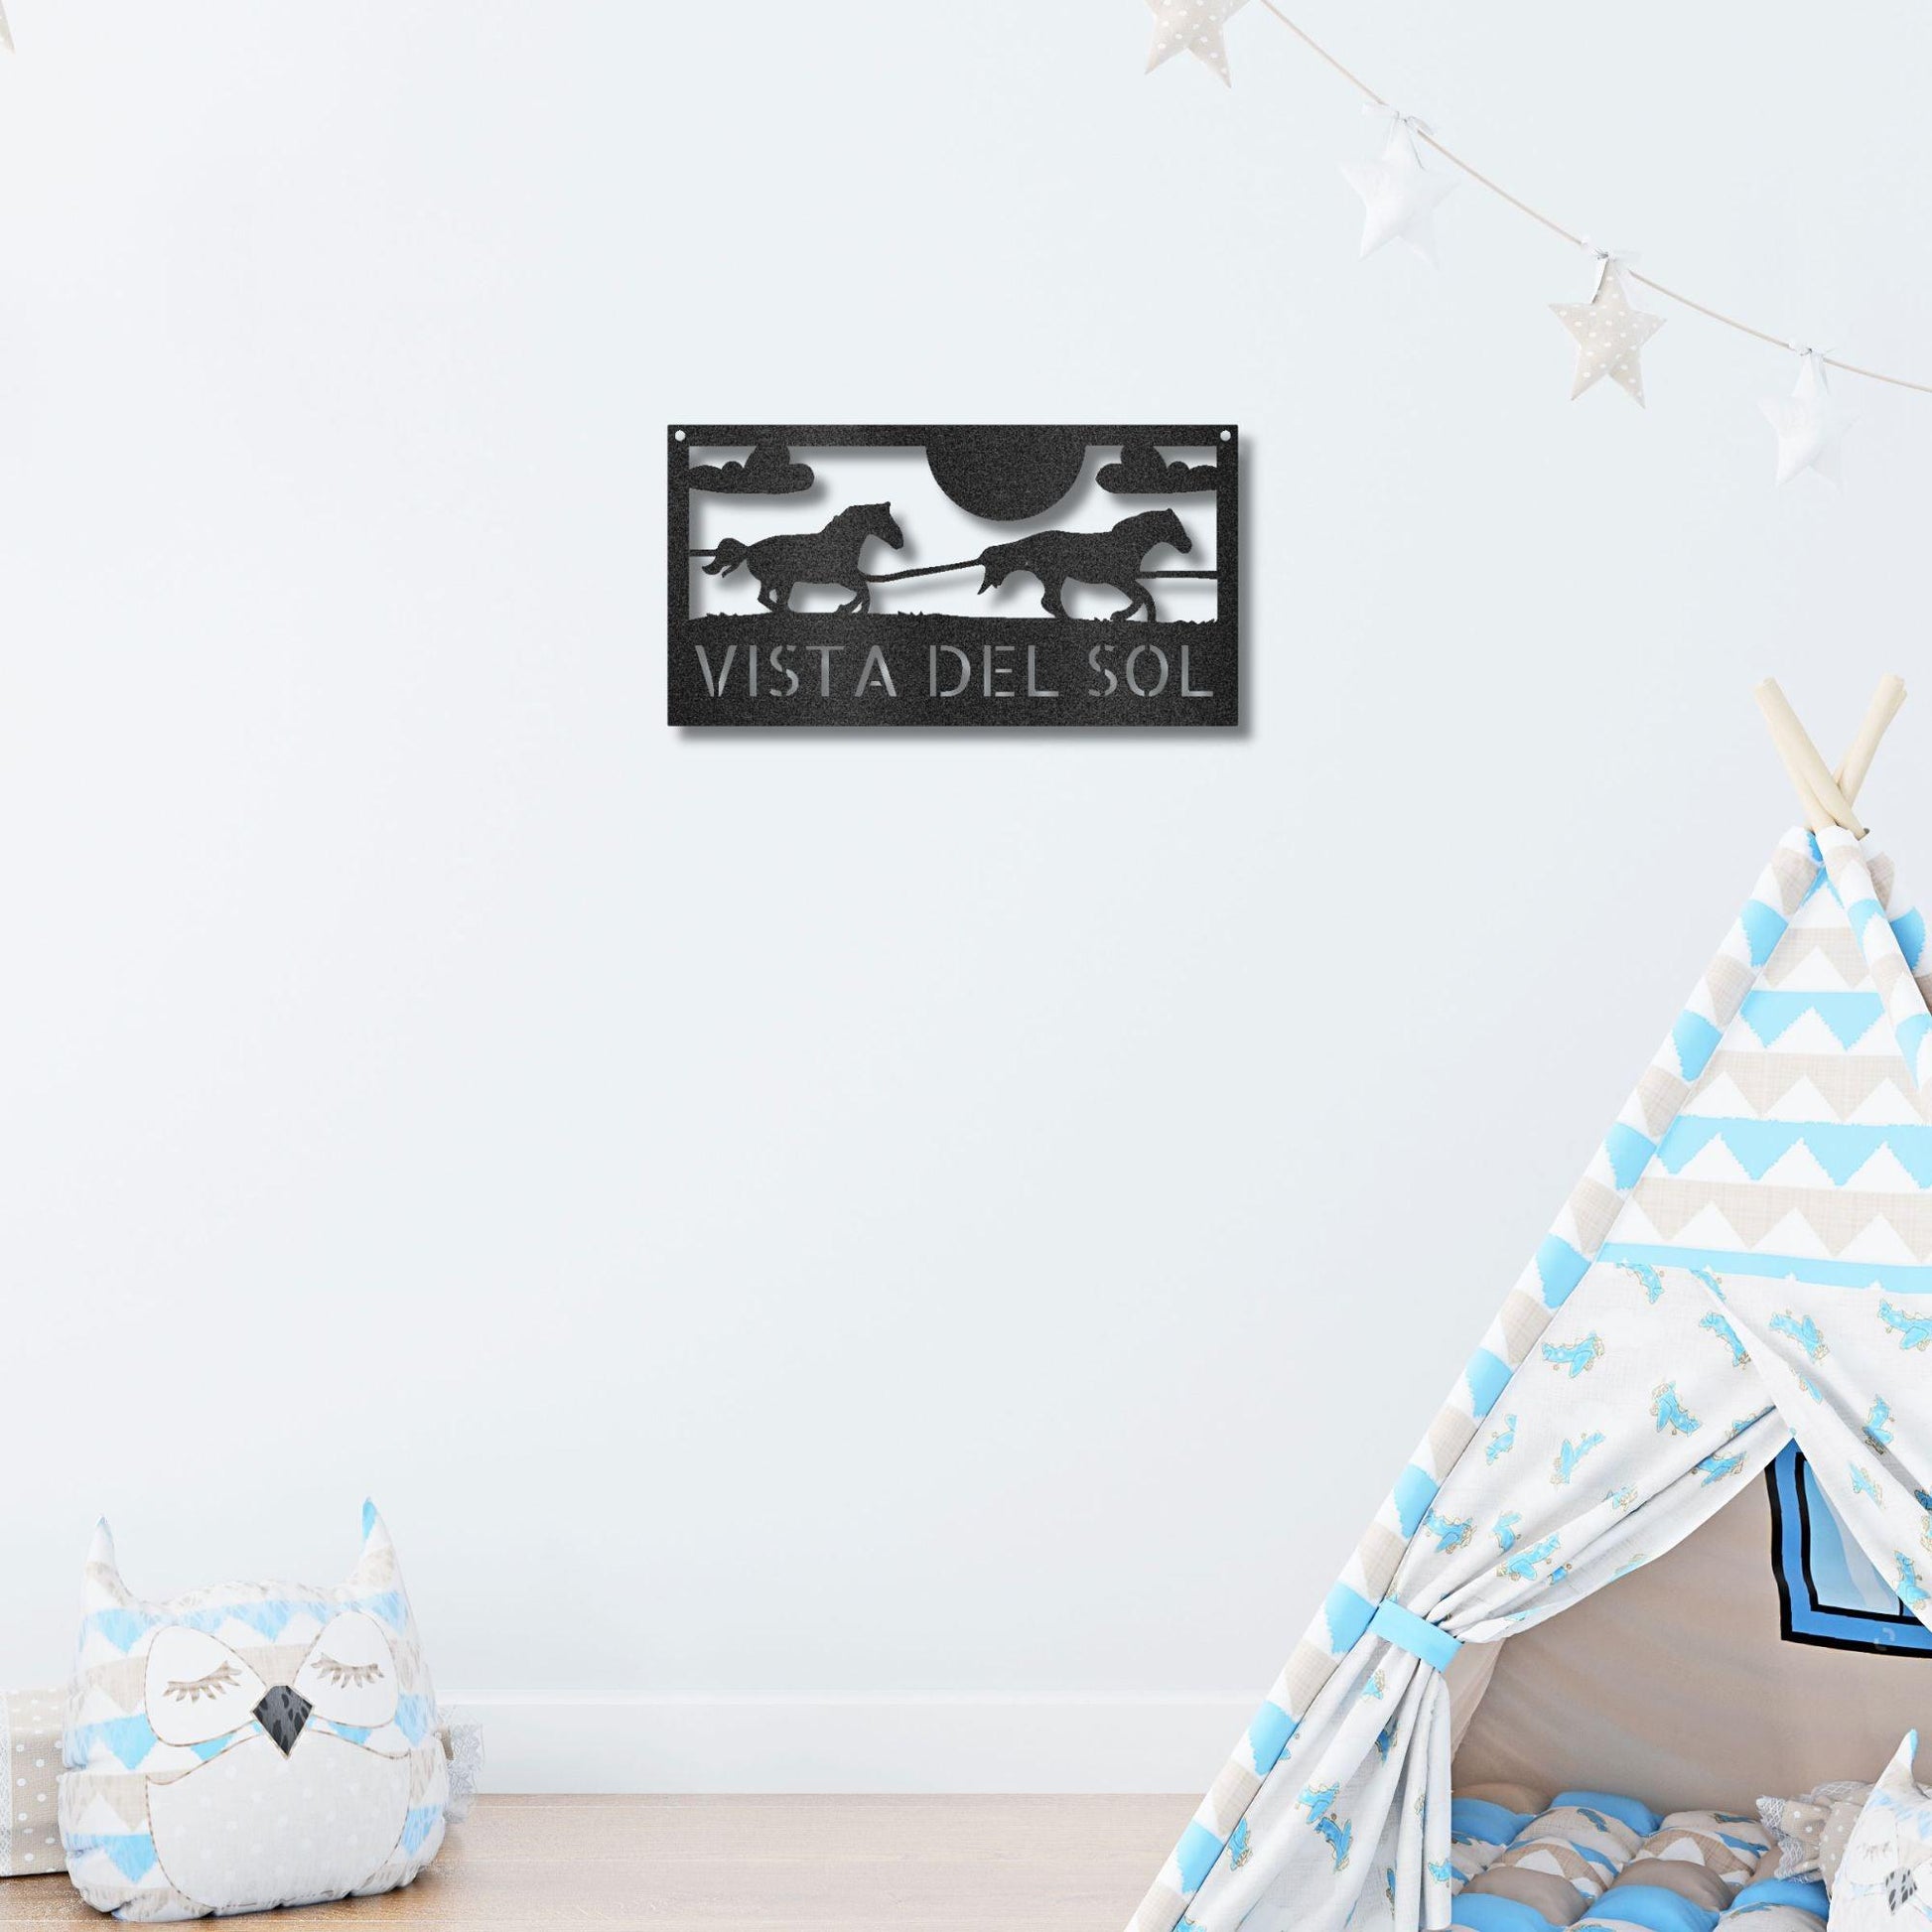 Racing Horses Monogram Personalized Indoor Outdoor Steel Wall Sign Art - Mallard Moon Gift Shop